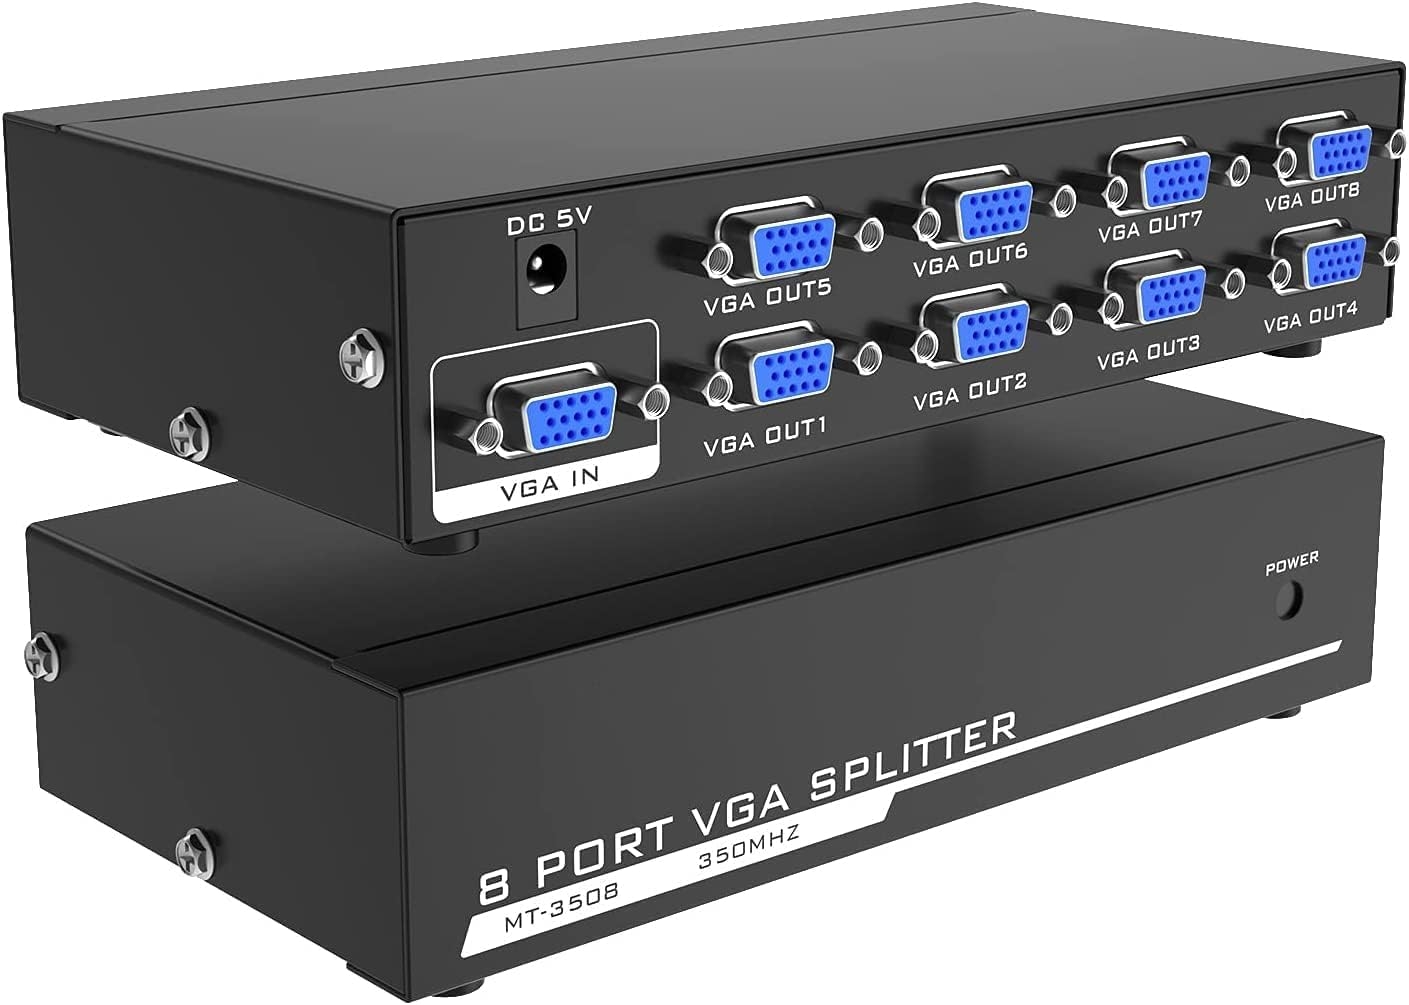 1x8 VGA Splitter, 8 Port VGA Splitter | 150MHz PC to 8 VGA Monitor TV Video Splitter | Support 1600 * 1280